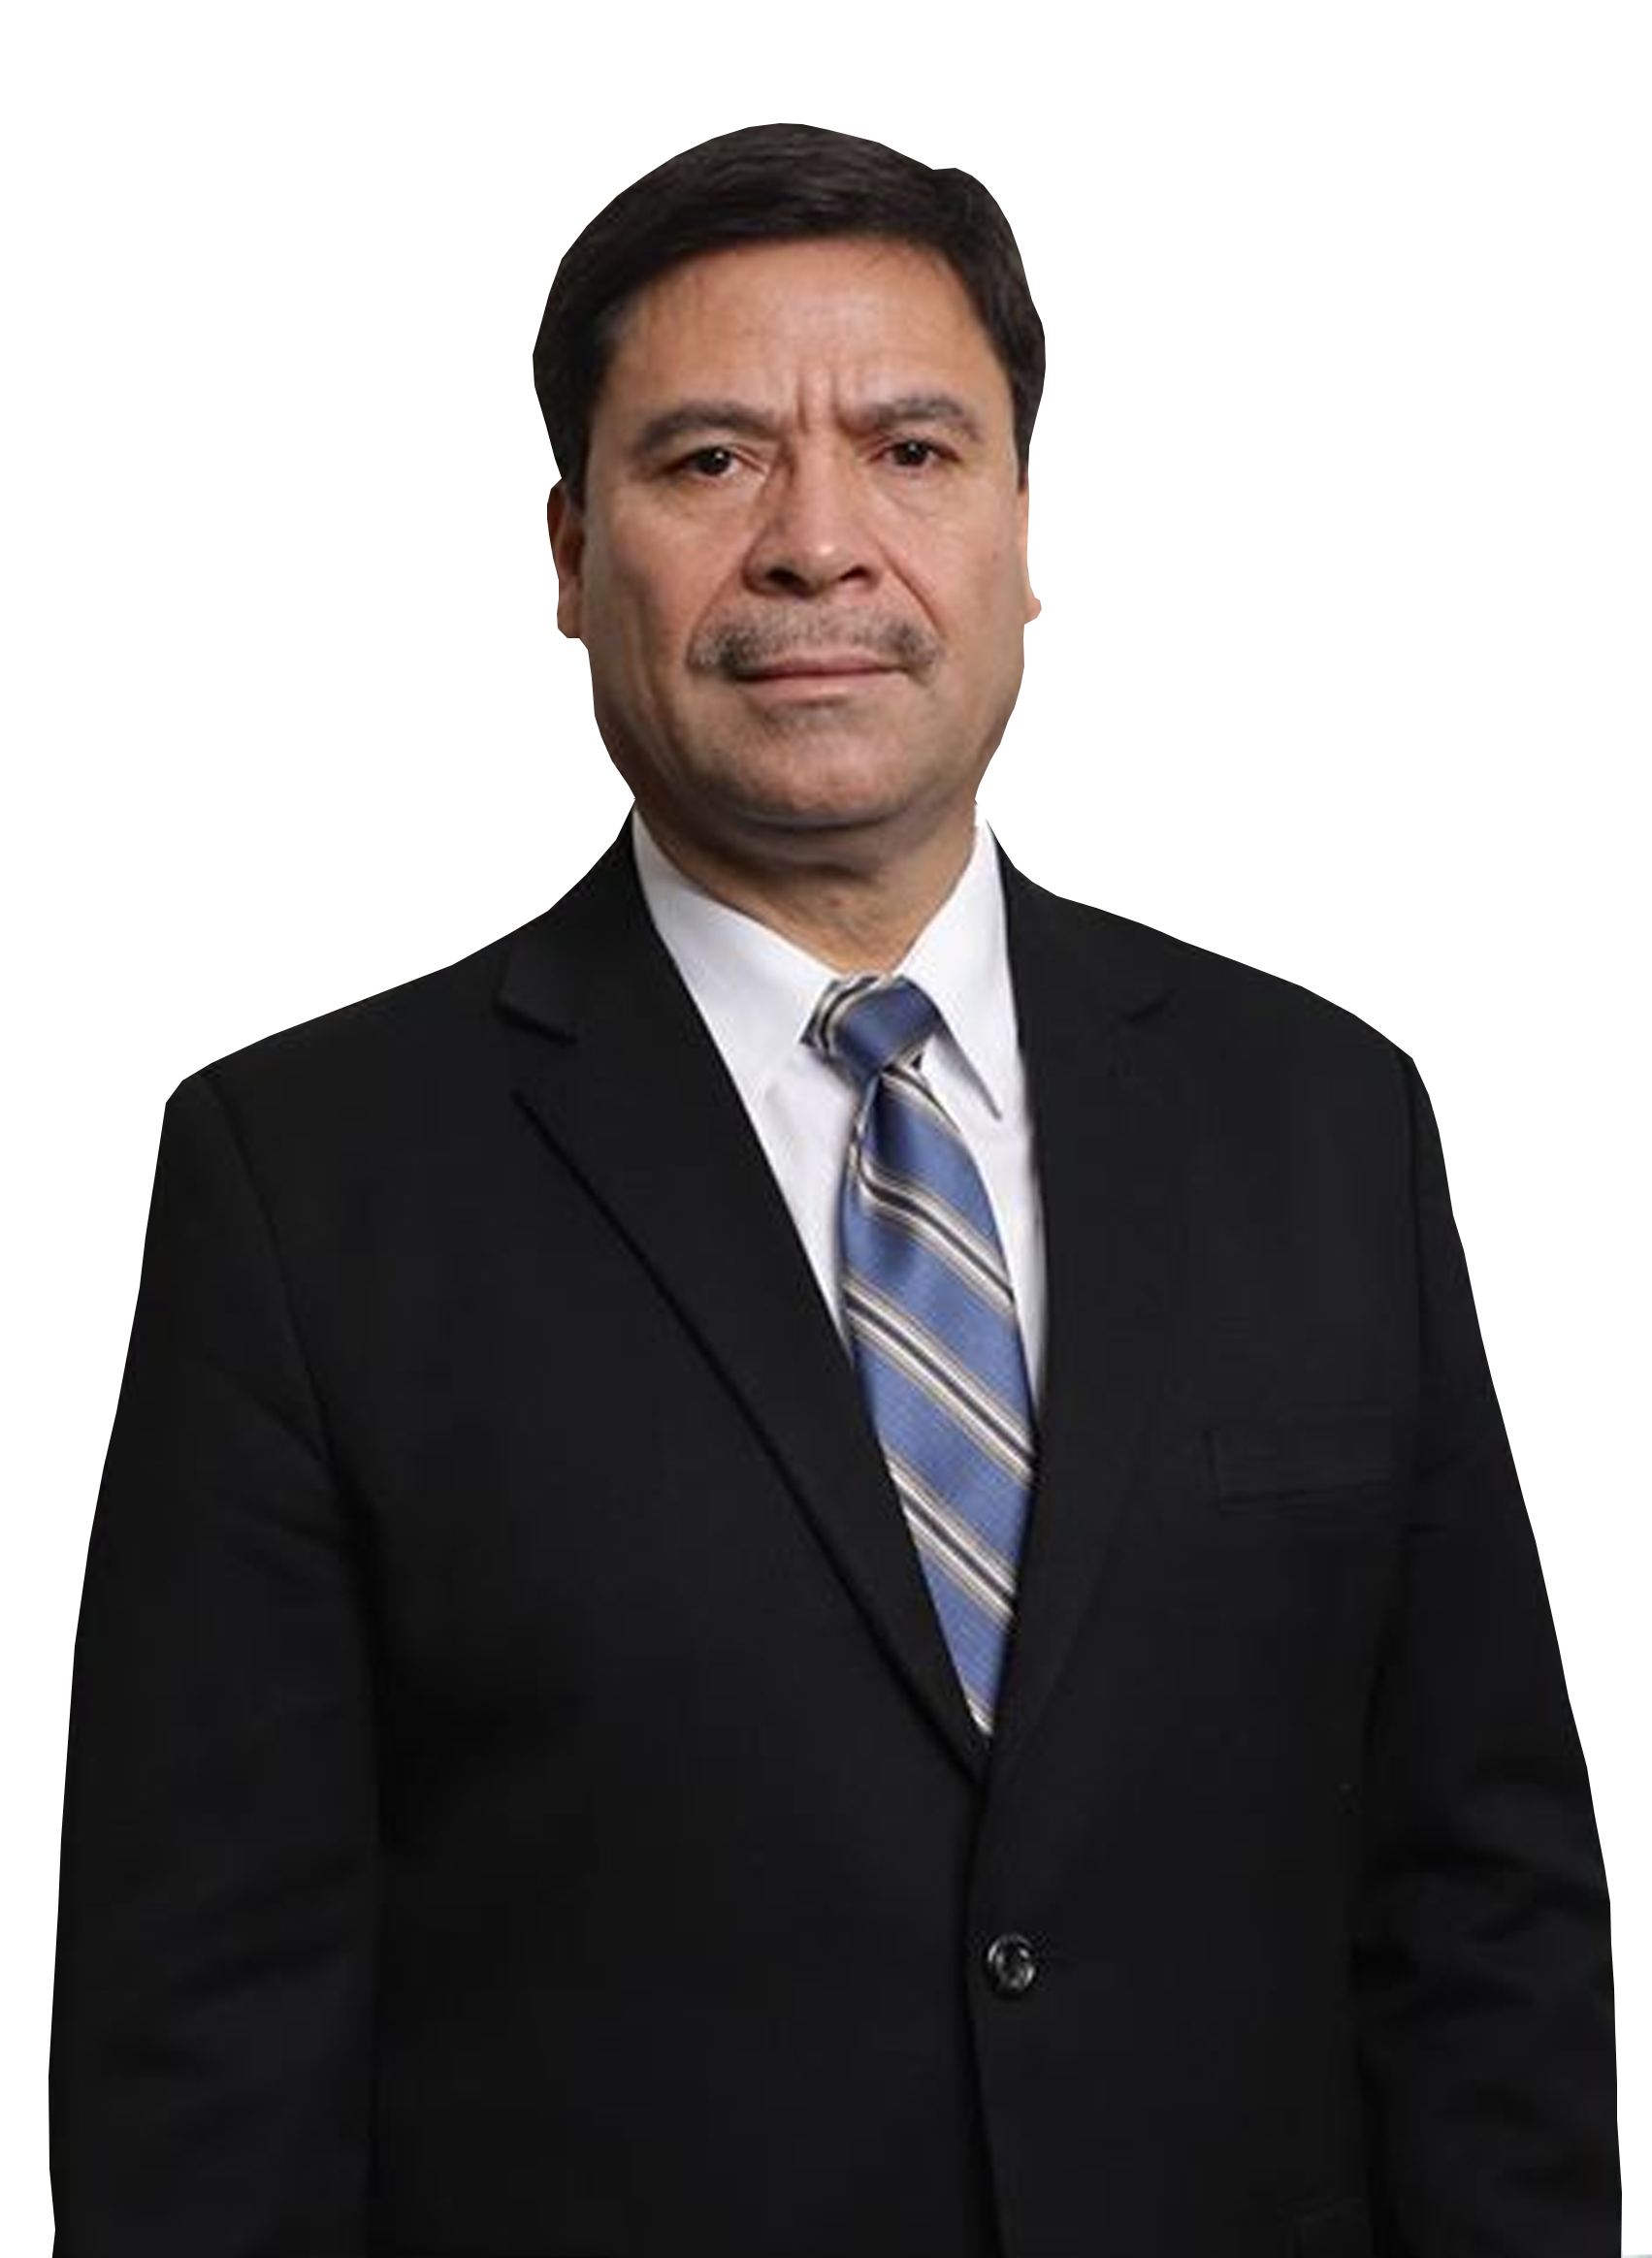 Dr. Ranulfo Rafael Rojas Cetina